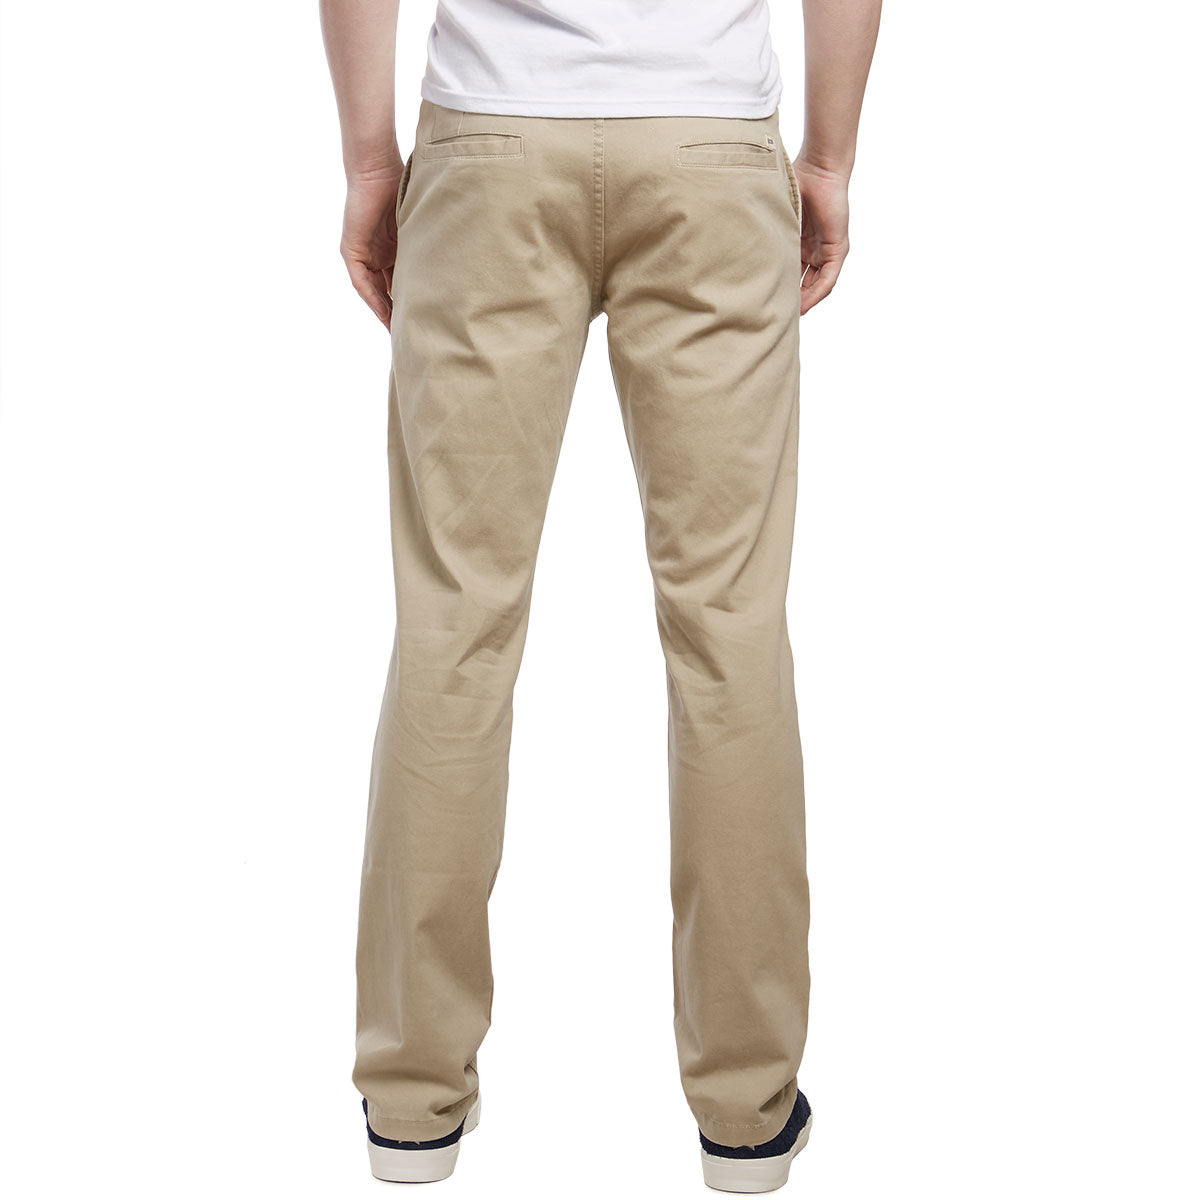 CCS Straight Fit Chino Pants - Light Khaki image 4